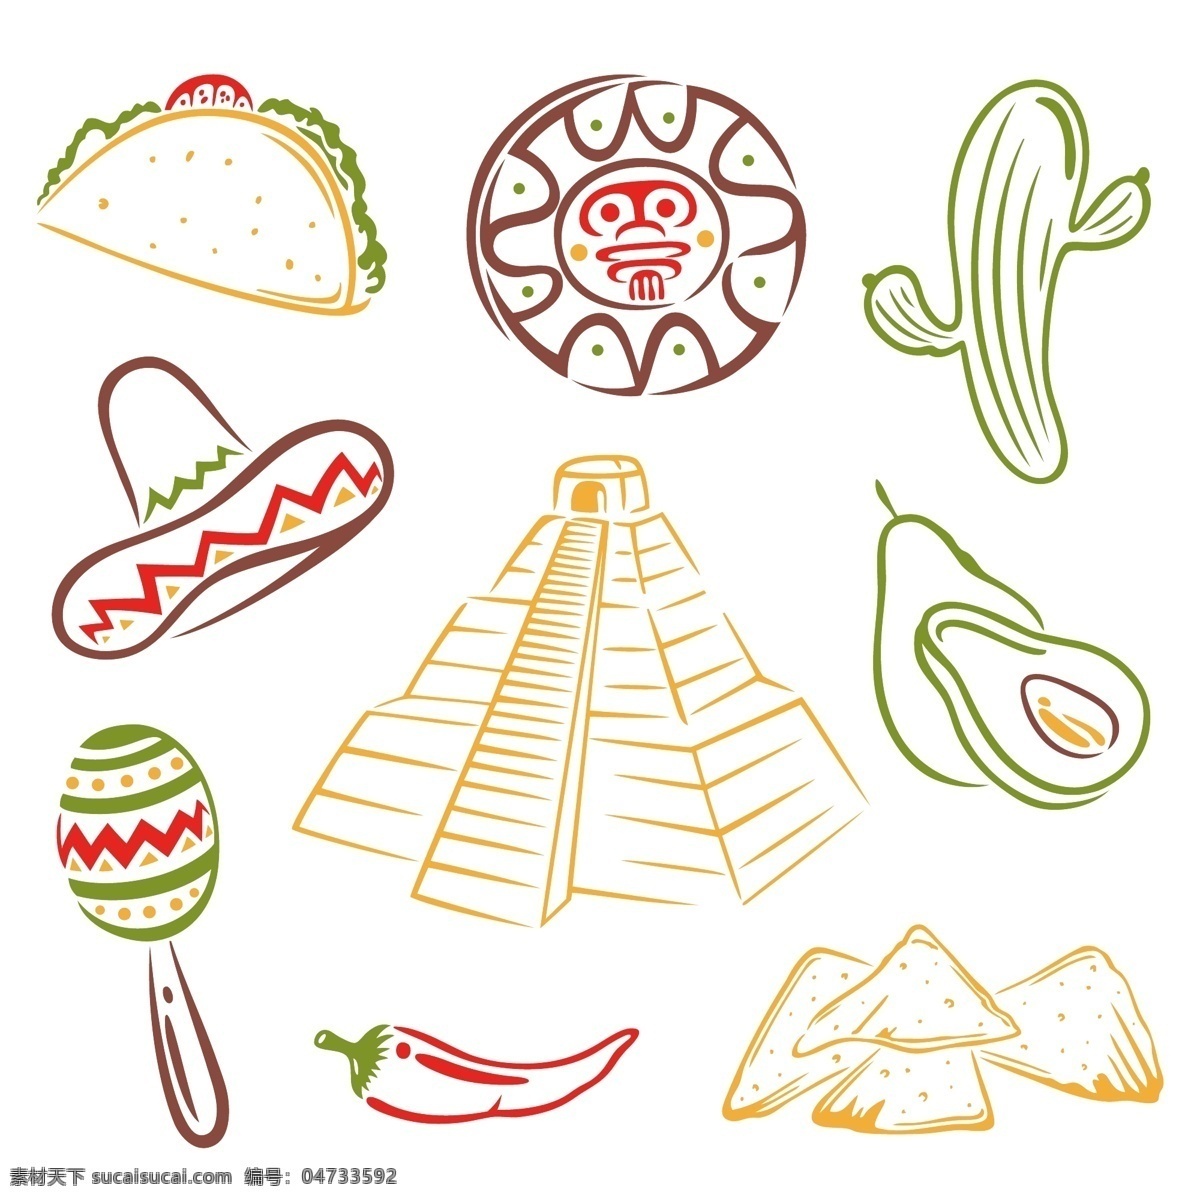 卡通 墨西哥 物品 帽子 辣椒 金字塔 食物 墨西哥国旗 矢量图案 边框底纹 背景图案 生活百科 矢量素材 白色